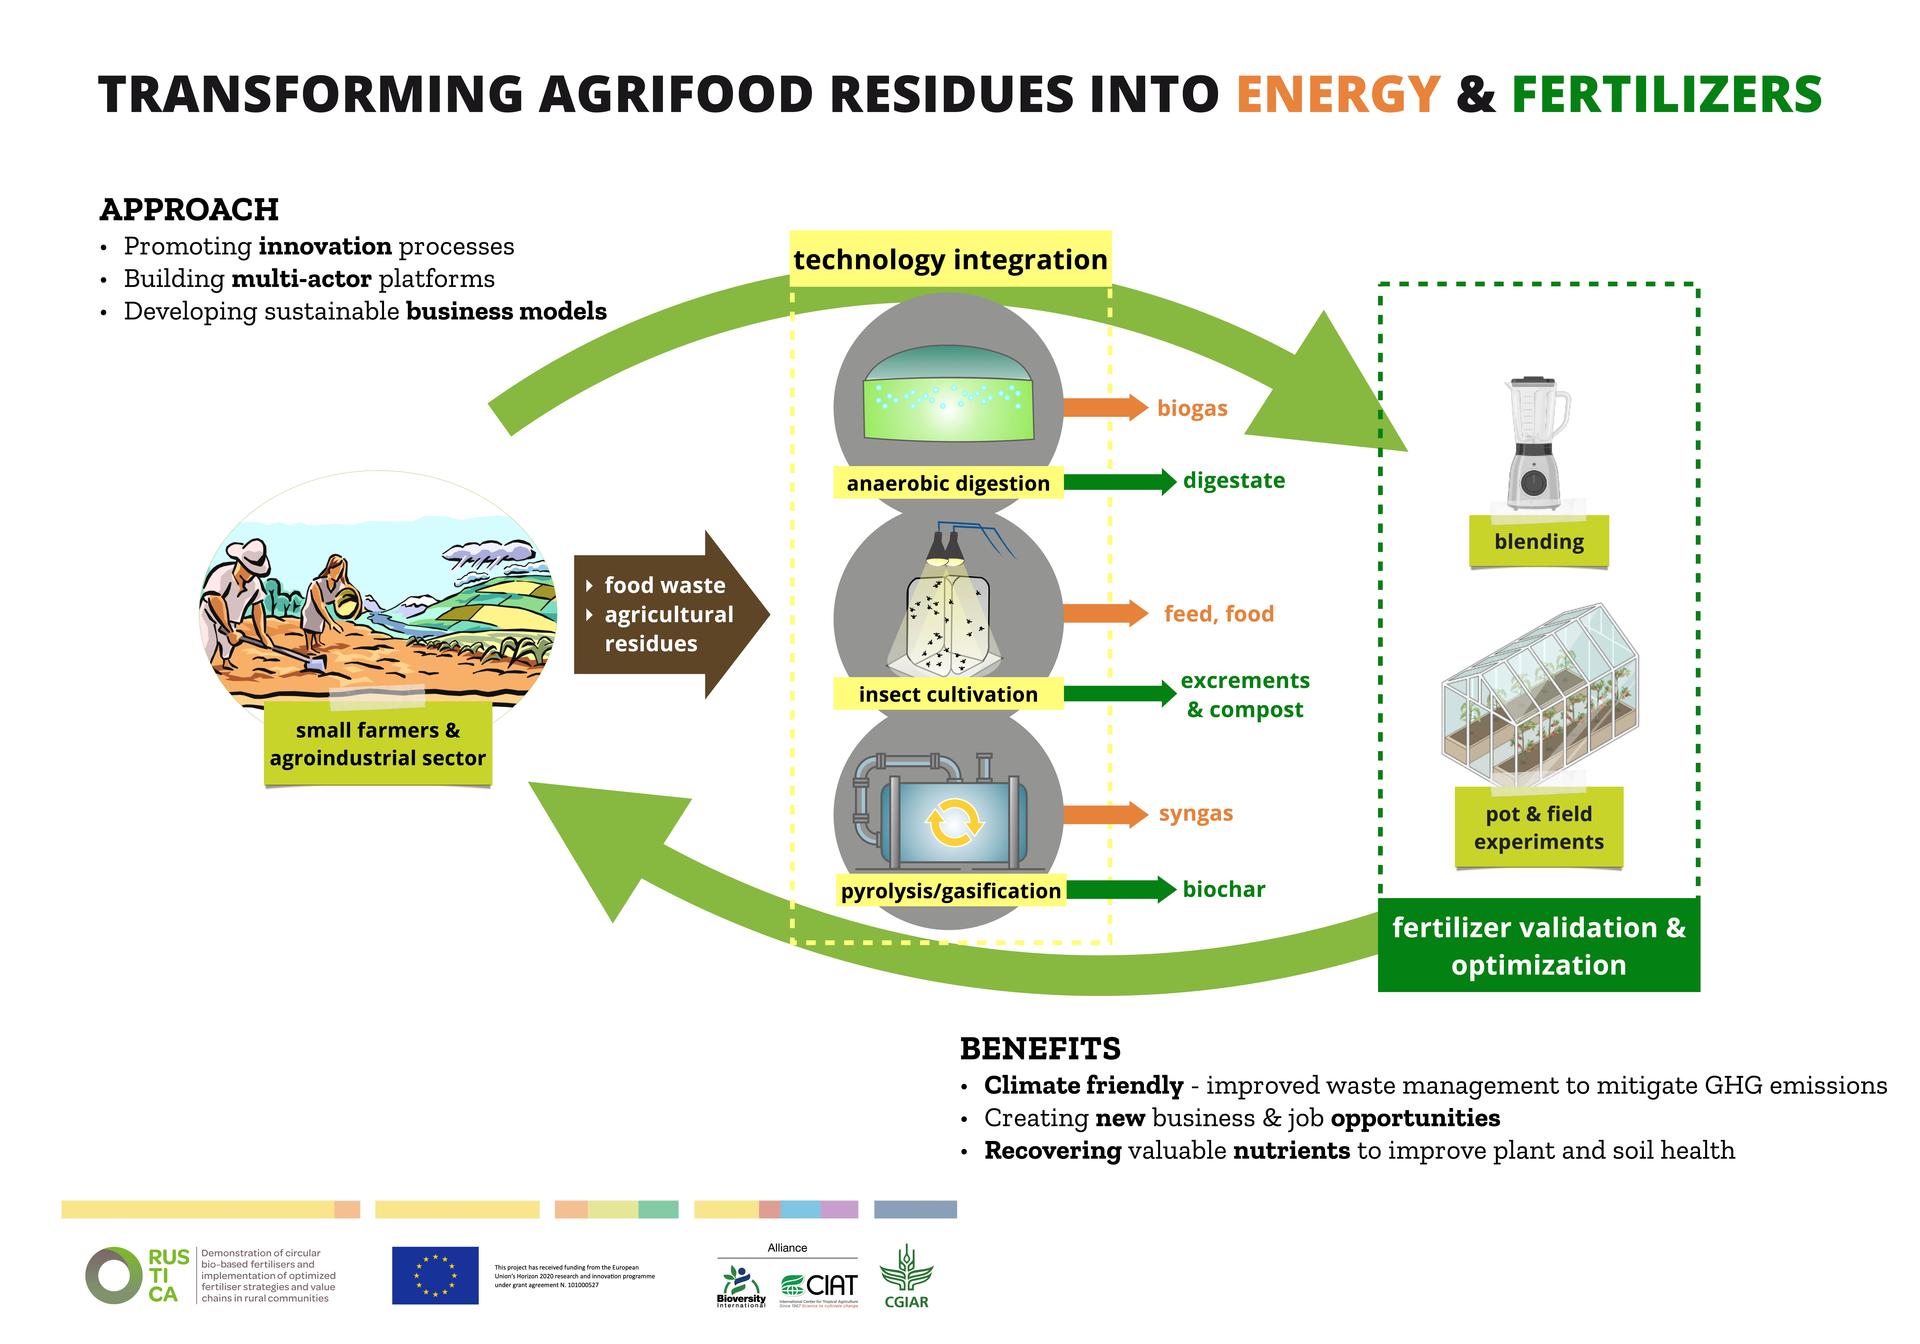 Tecnologías de transformación de residuos agroalimentarios en energía y fertilizantes priorizadas para el Valle del Cauca